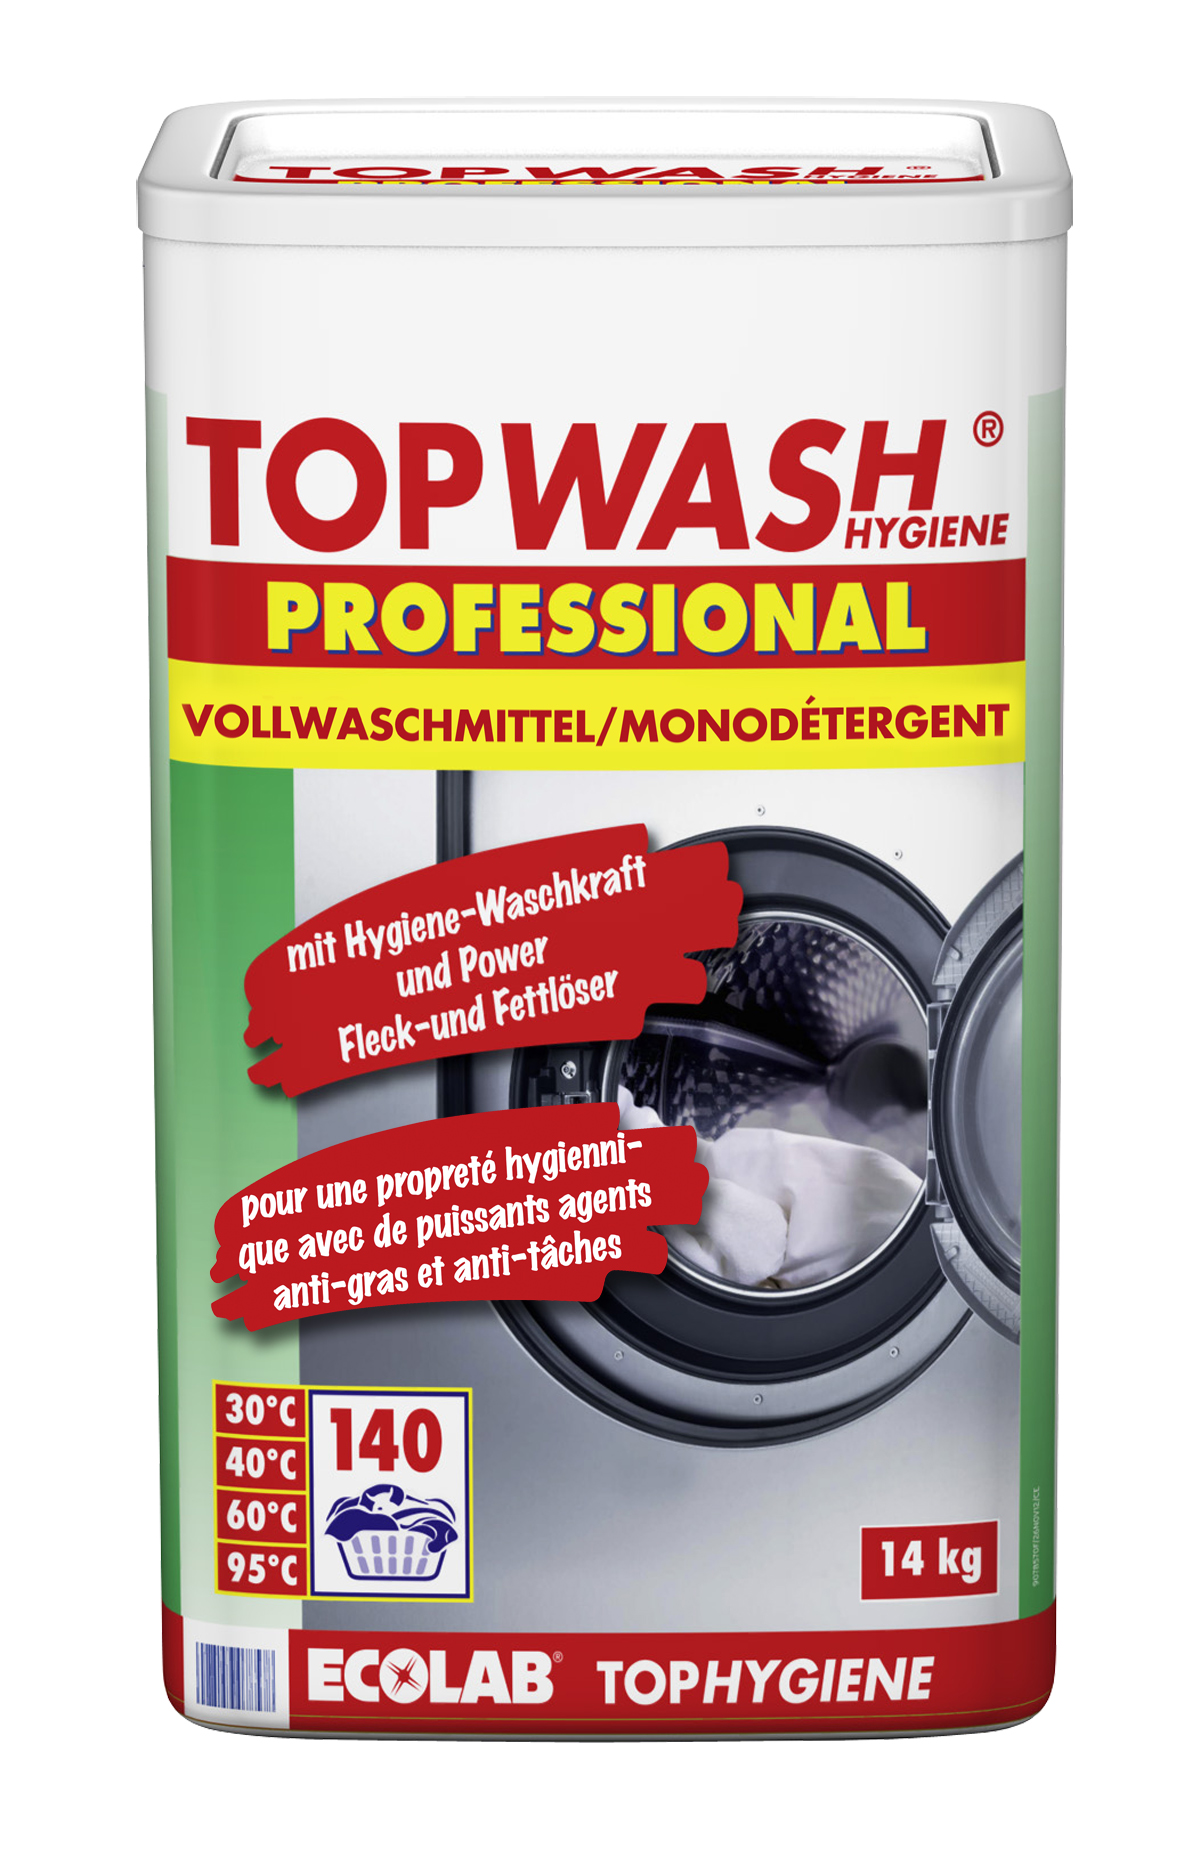 TOPWASH Pulver-Waschmittel 14kg ECOLAB